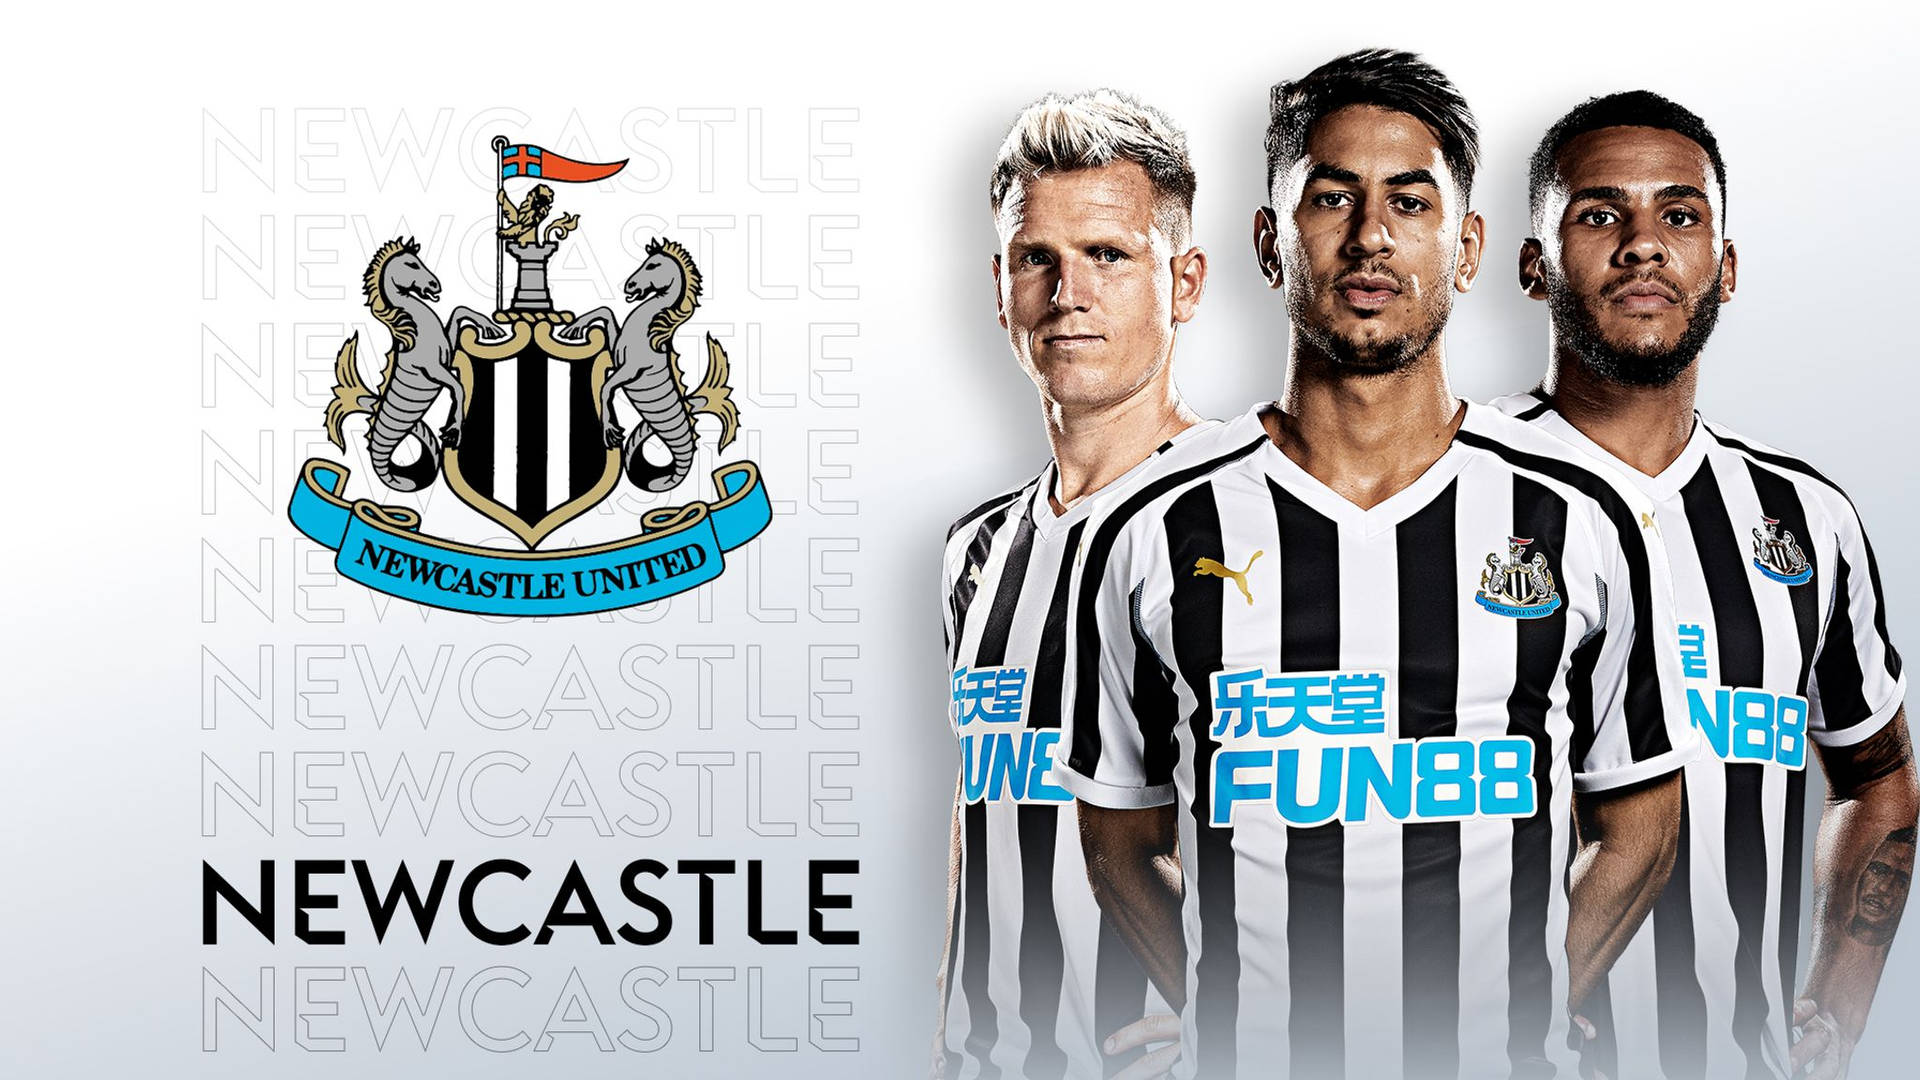 Logo og spillere fra Newcastle United FC tapet Wallpaper